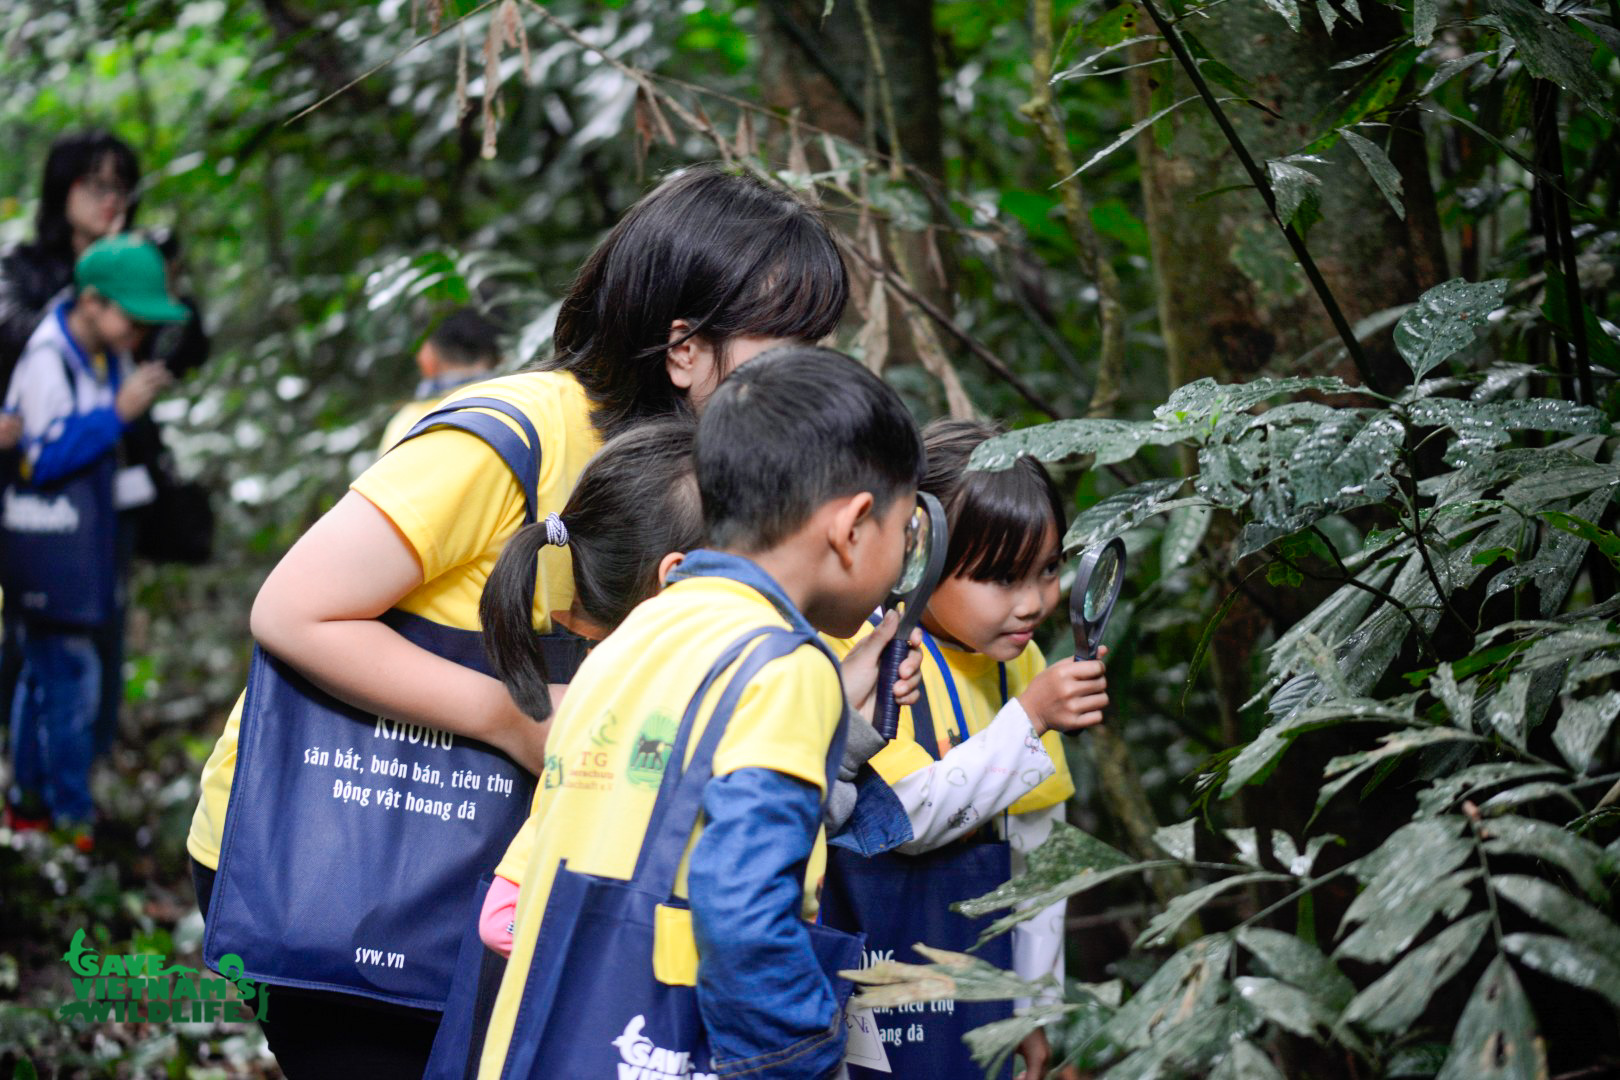 Các em nhỏ đang khám phá thiên nhiên trong vườn thực vật tại Vườn Quốc gia Cúc Phương, hoạt động này thuộc dự án “Trao Bé Hạt Mầm” do Save Vietnam’s Wildlife tổ chức. Ảnh: Save Vietnam’s Wildlife.